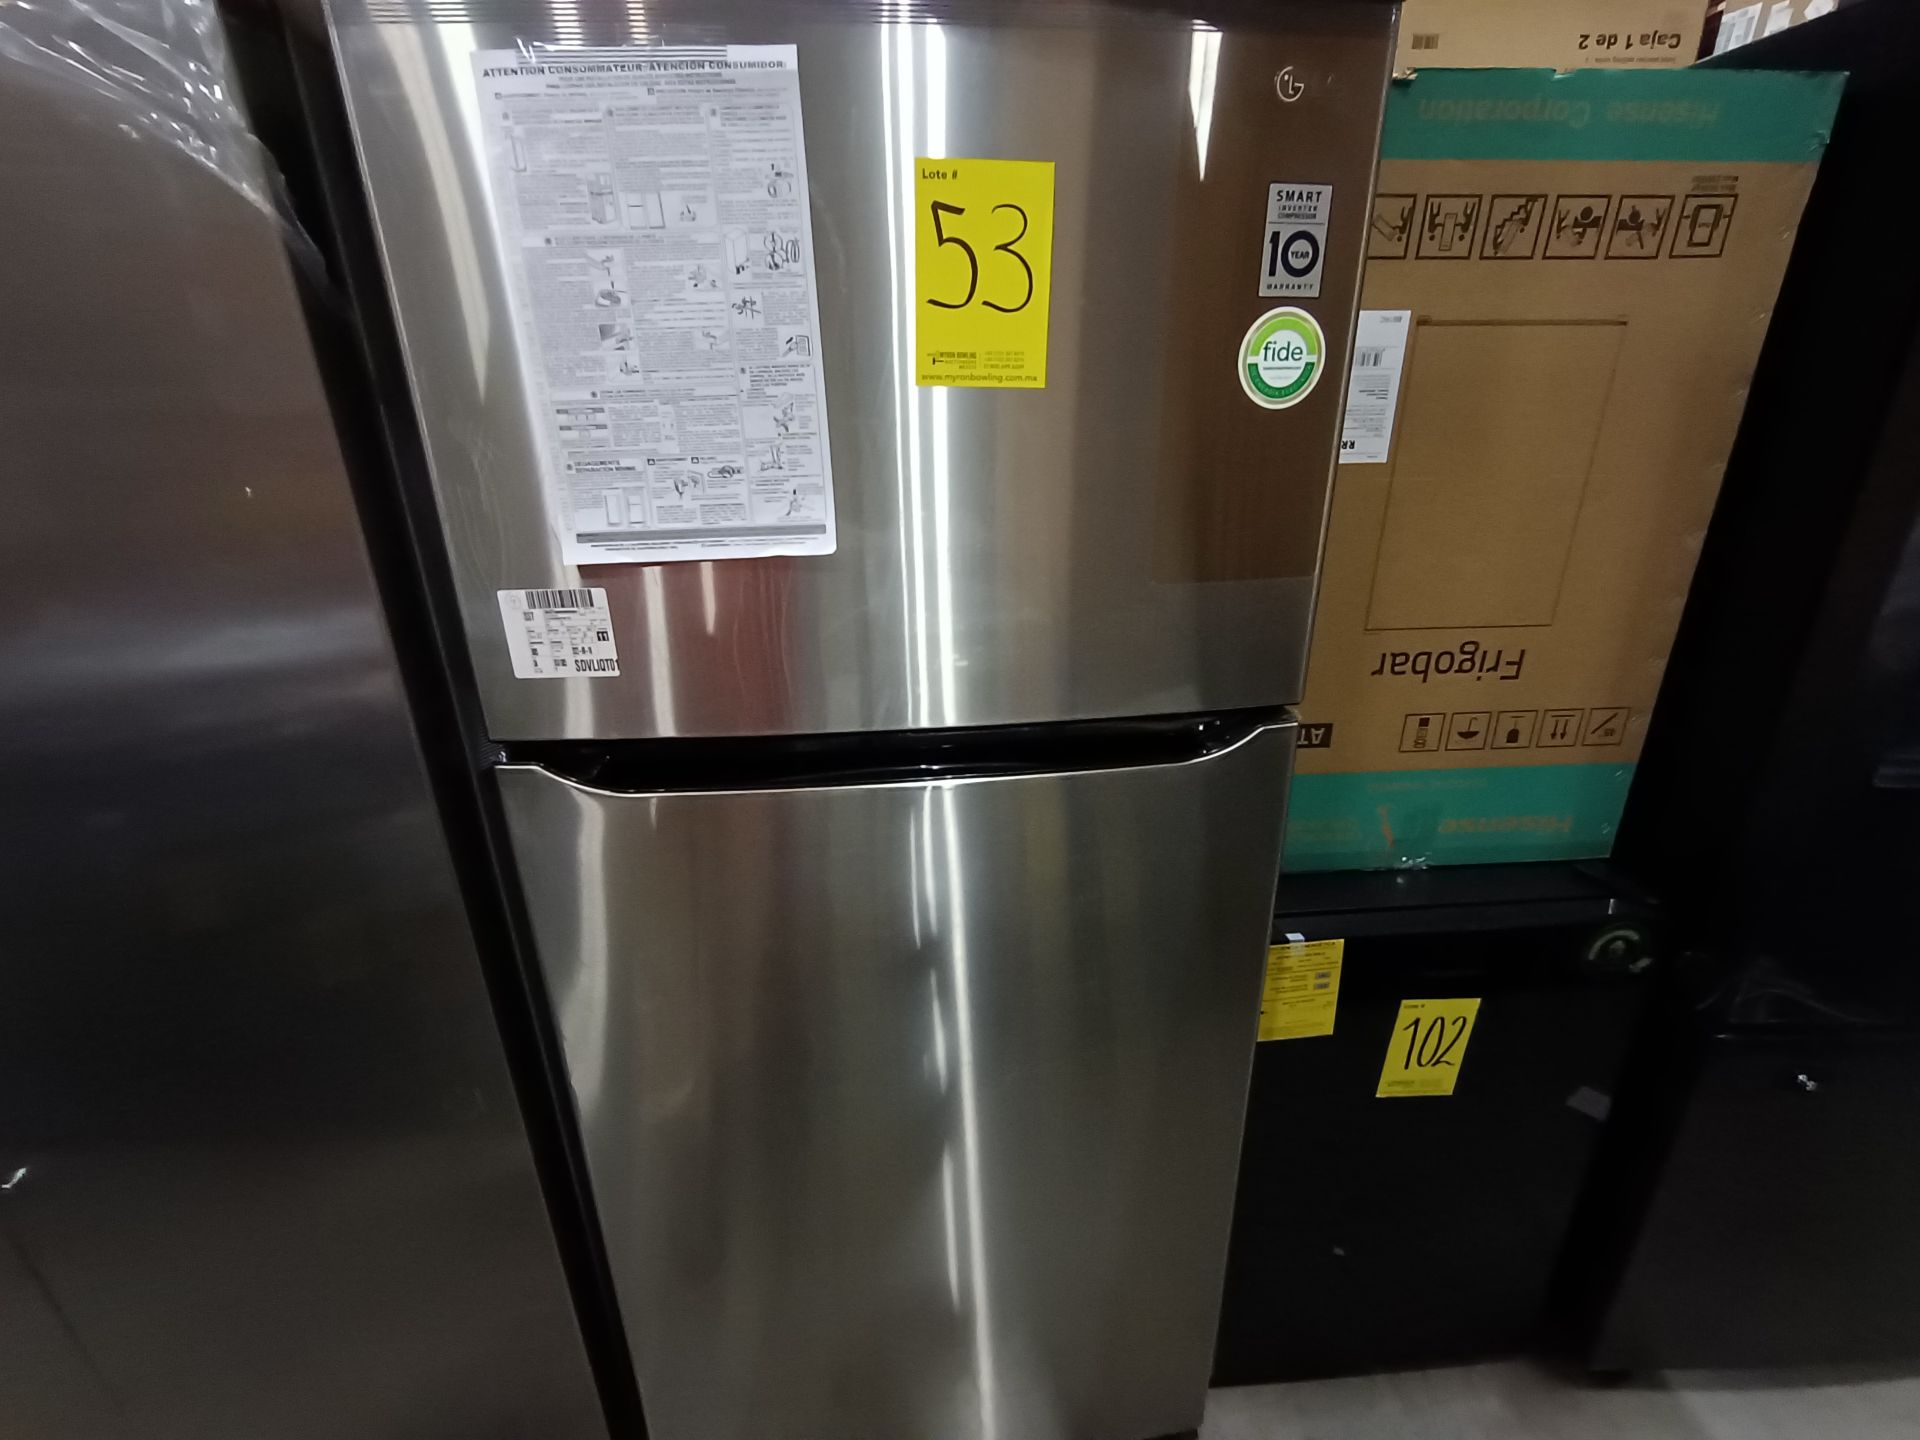 1 Refrigerador Marca LG, Modelo LT57BPSX, No de serie 209MRAQ10296, Color Gris, LB-025604. - Image 4 of 9